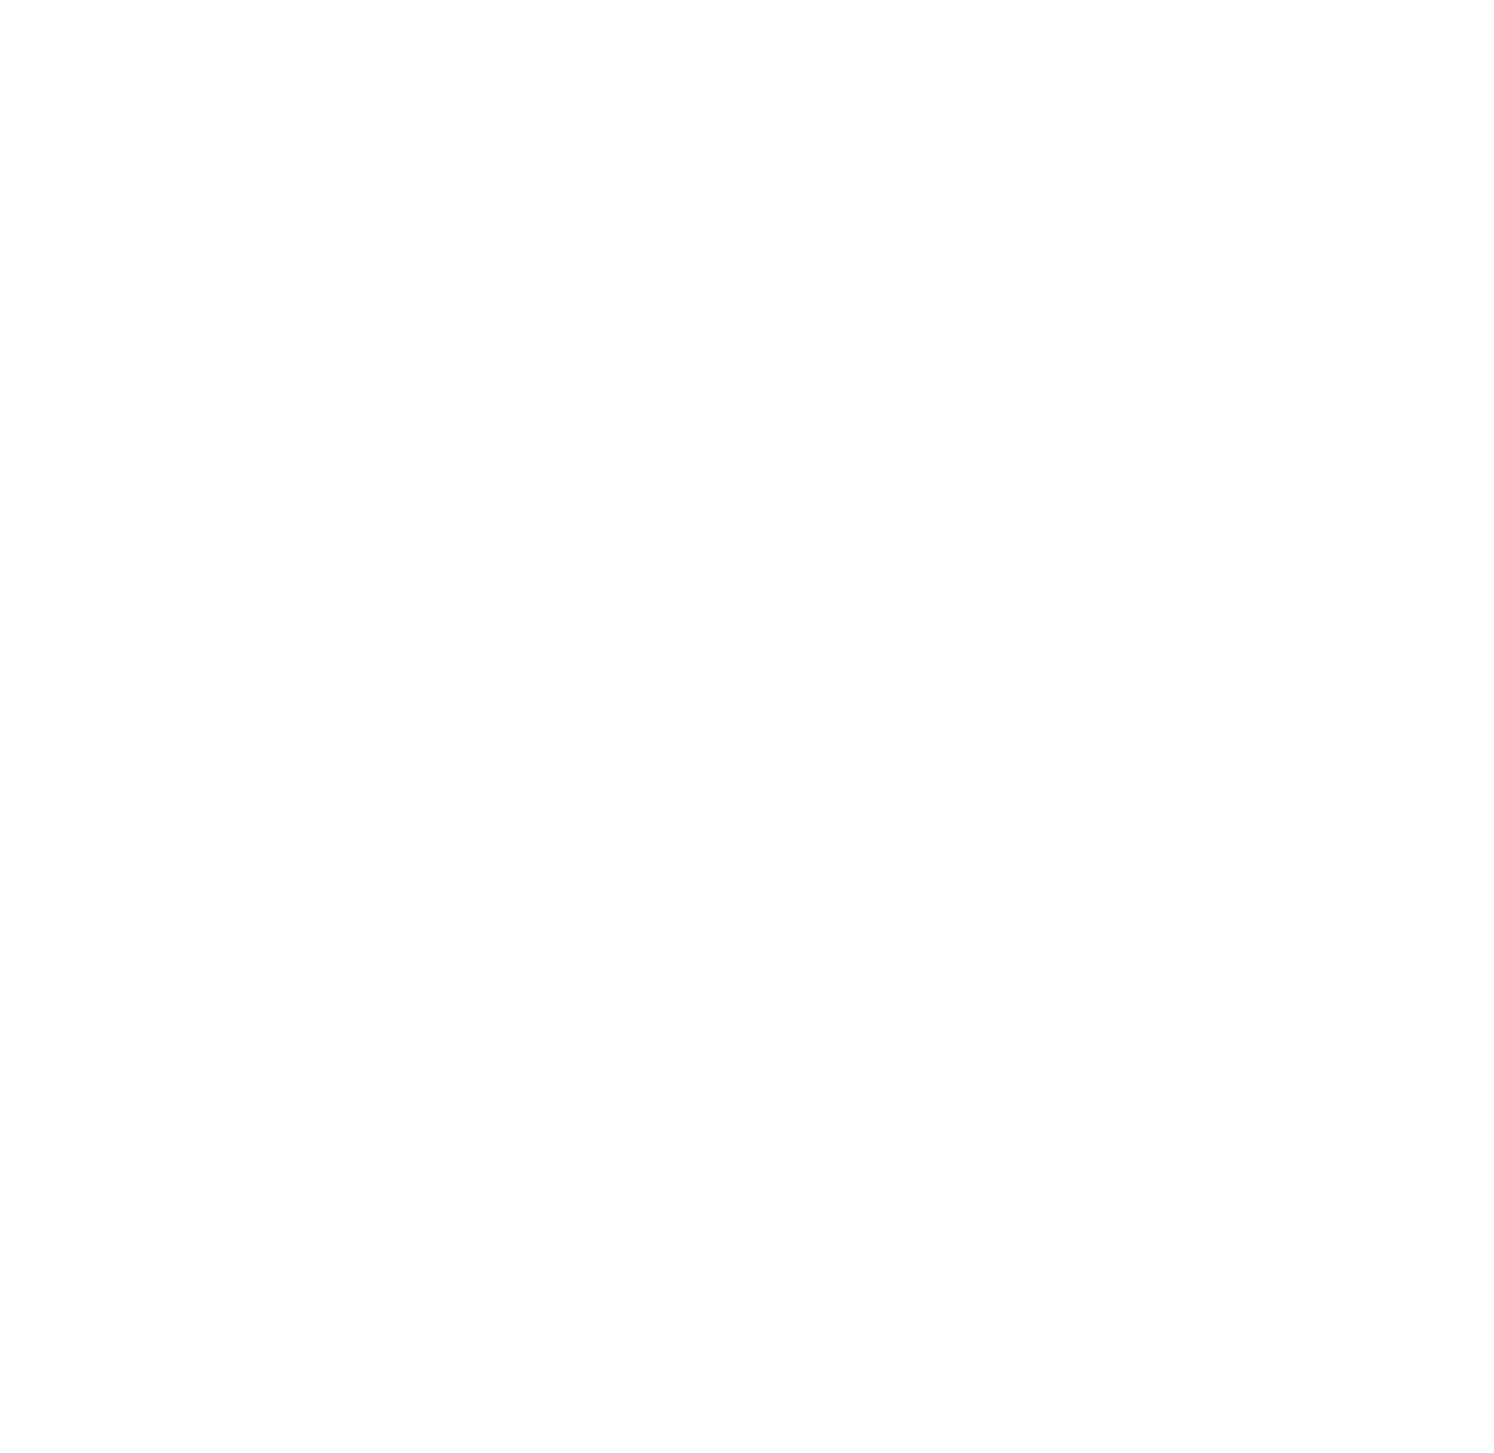 Inchcape logo pour fonds sombres (PNG transparent)